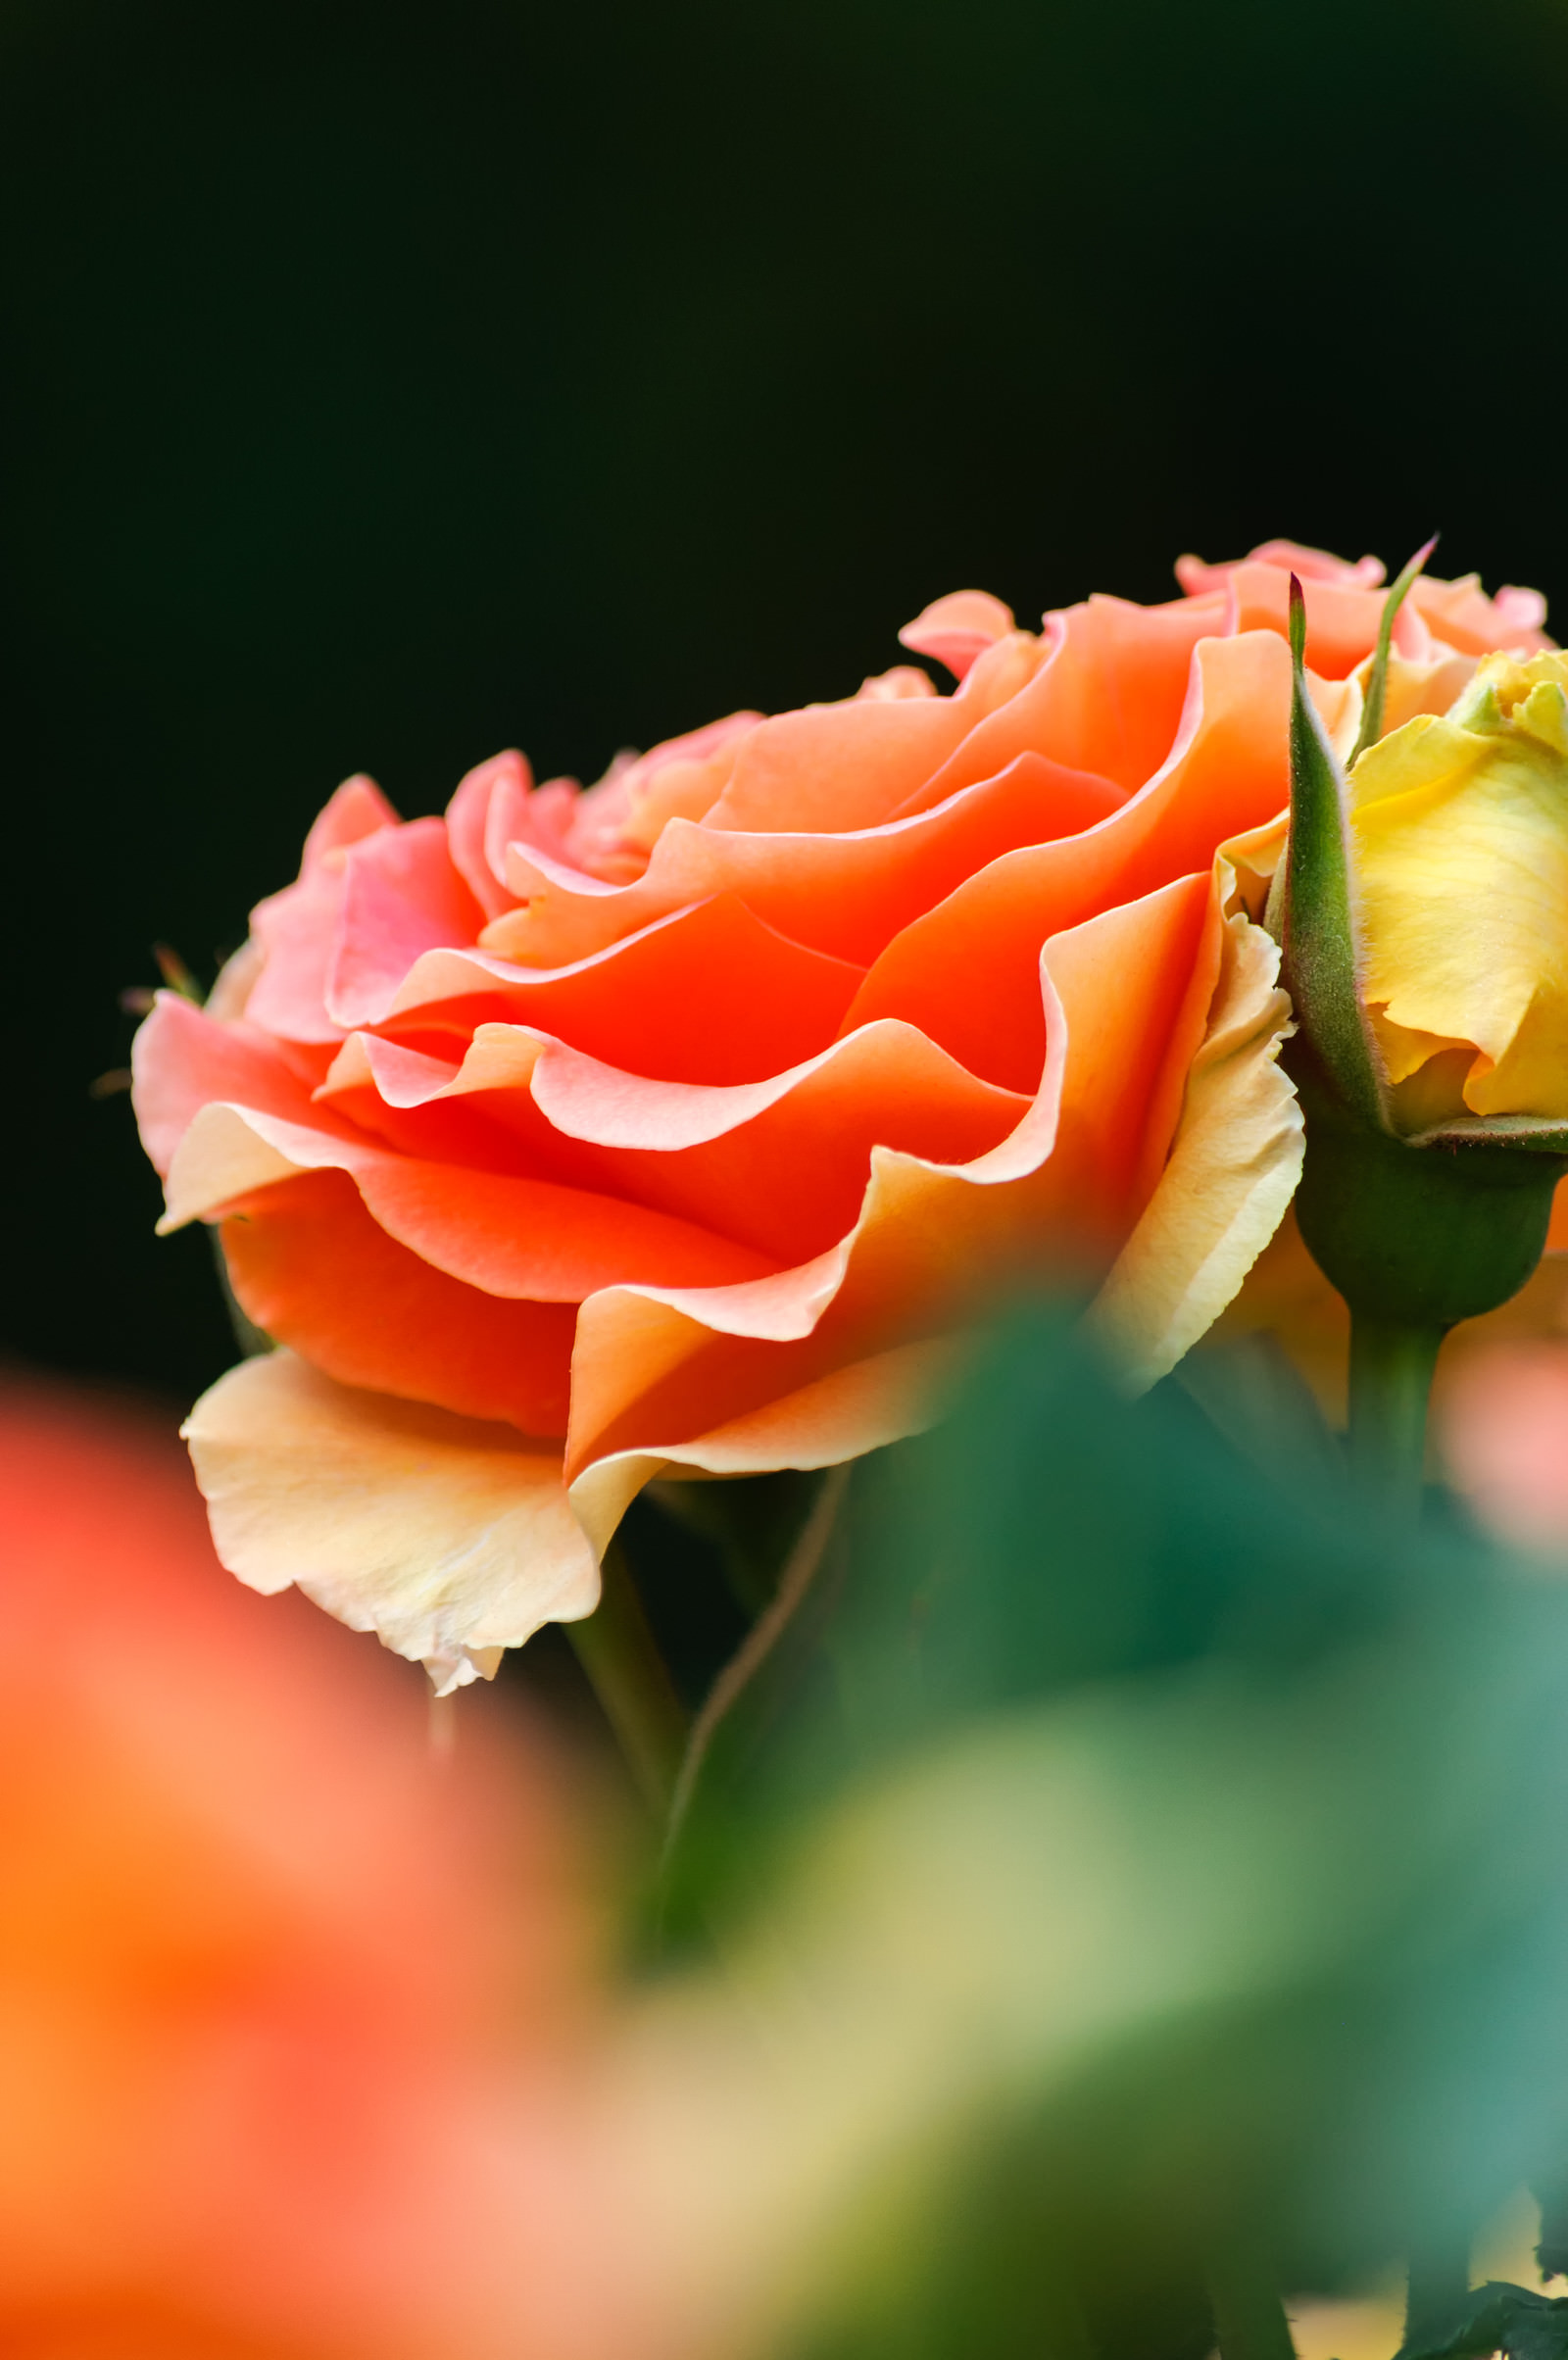 艶やかなオレンジのバラの無料の写真素材 フリー素材 をダウンロード ぱくたそ